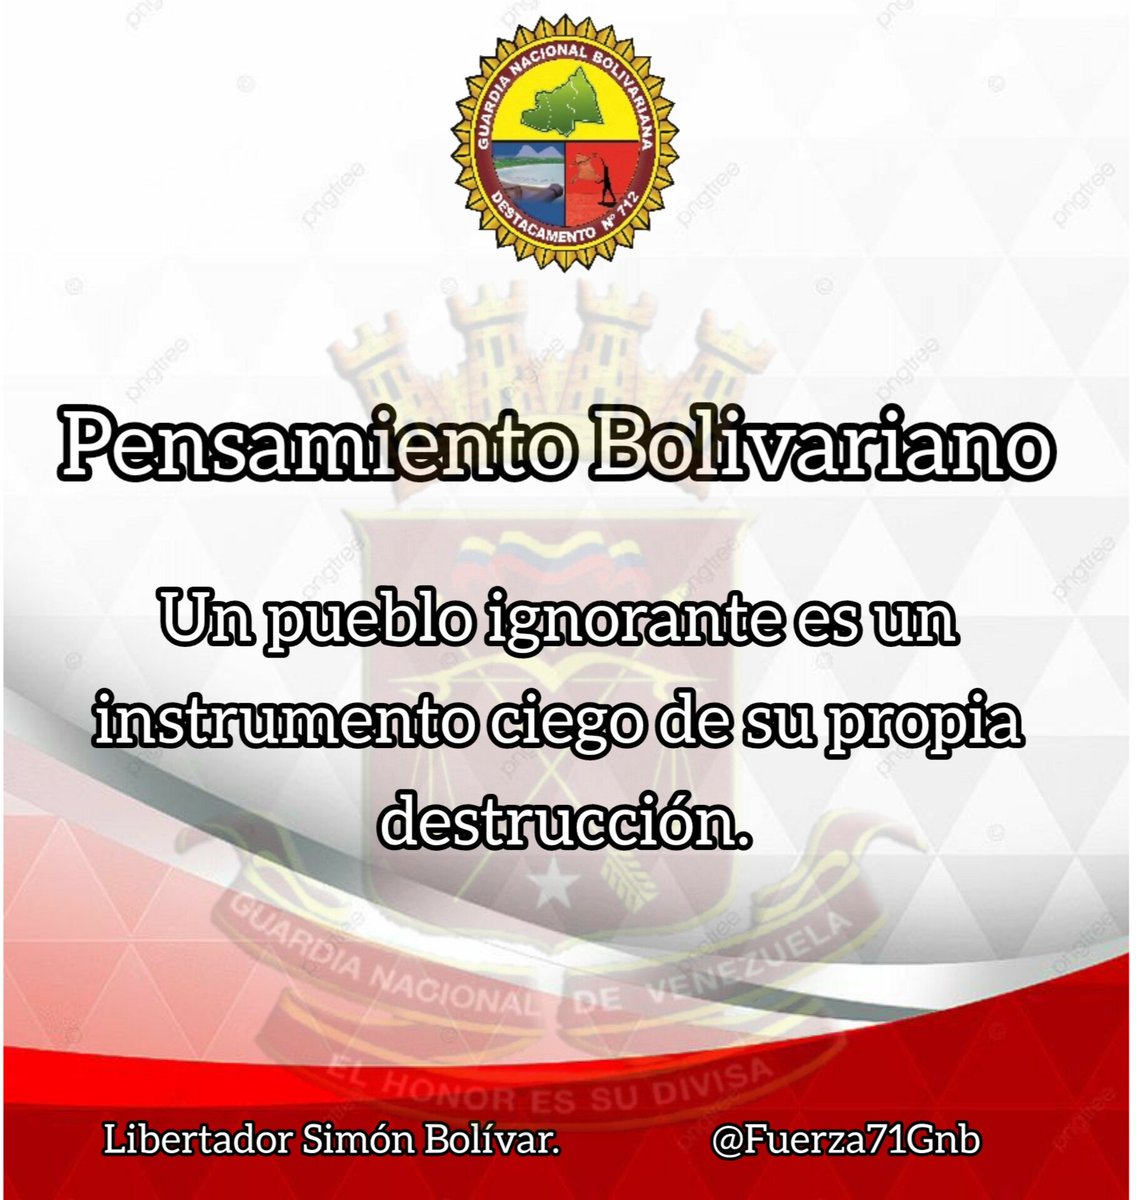 Pensamiento Bolivariano del libertador Simón Bolívar.